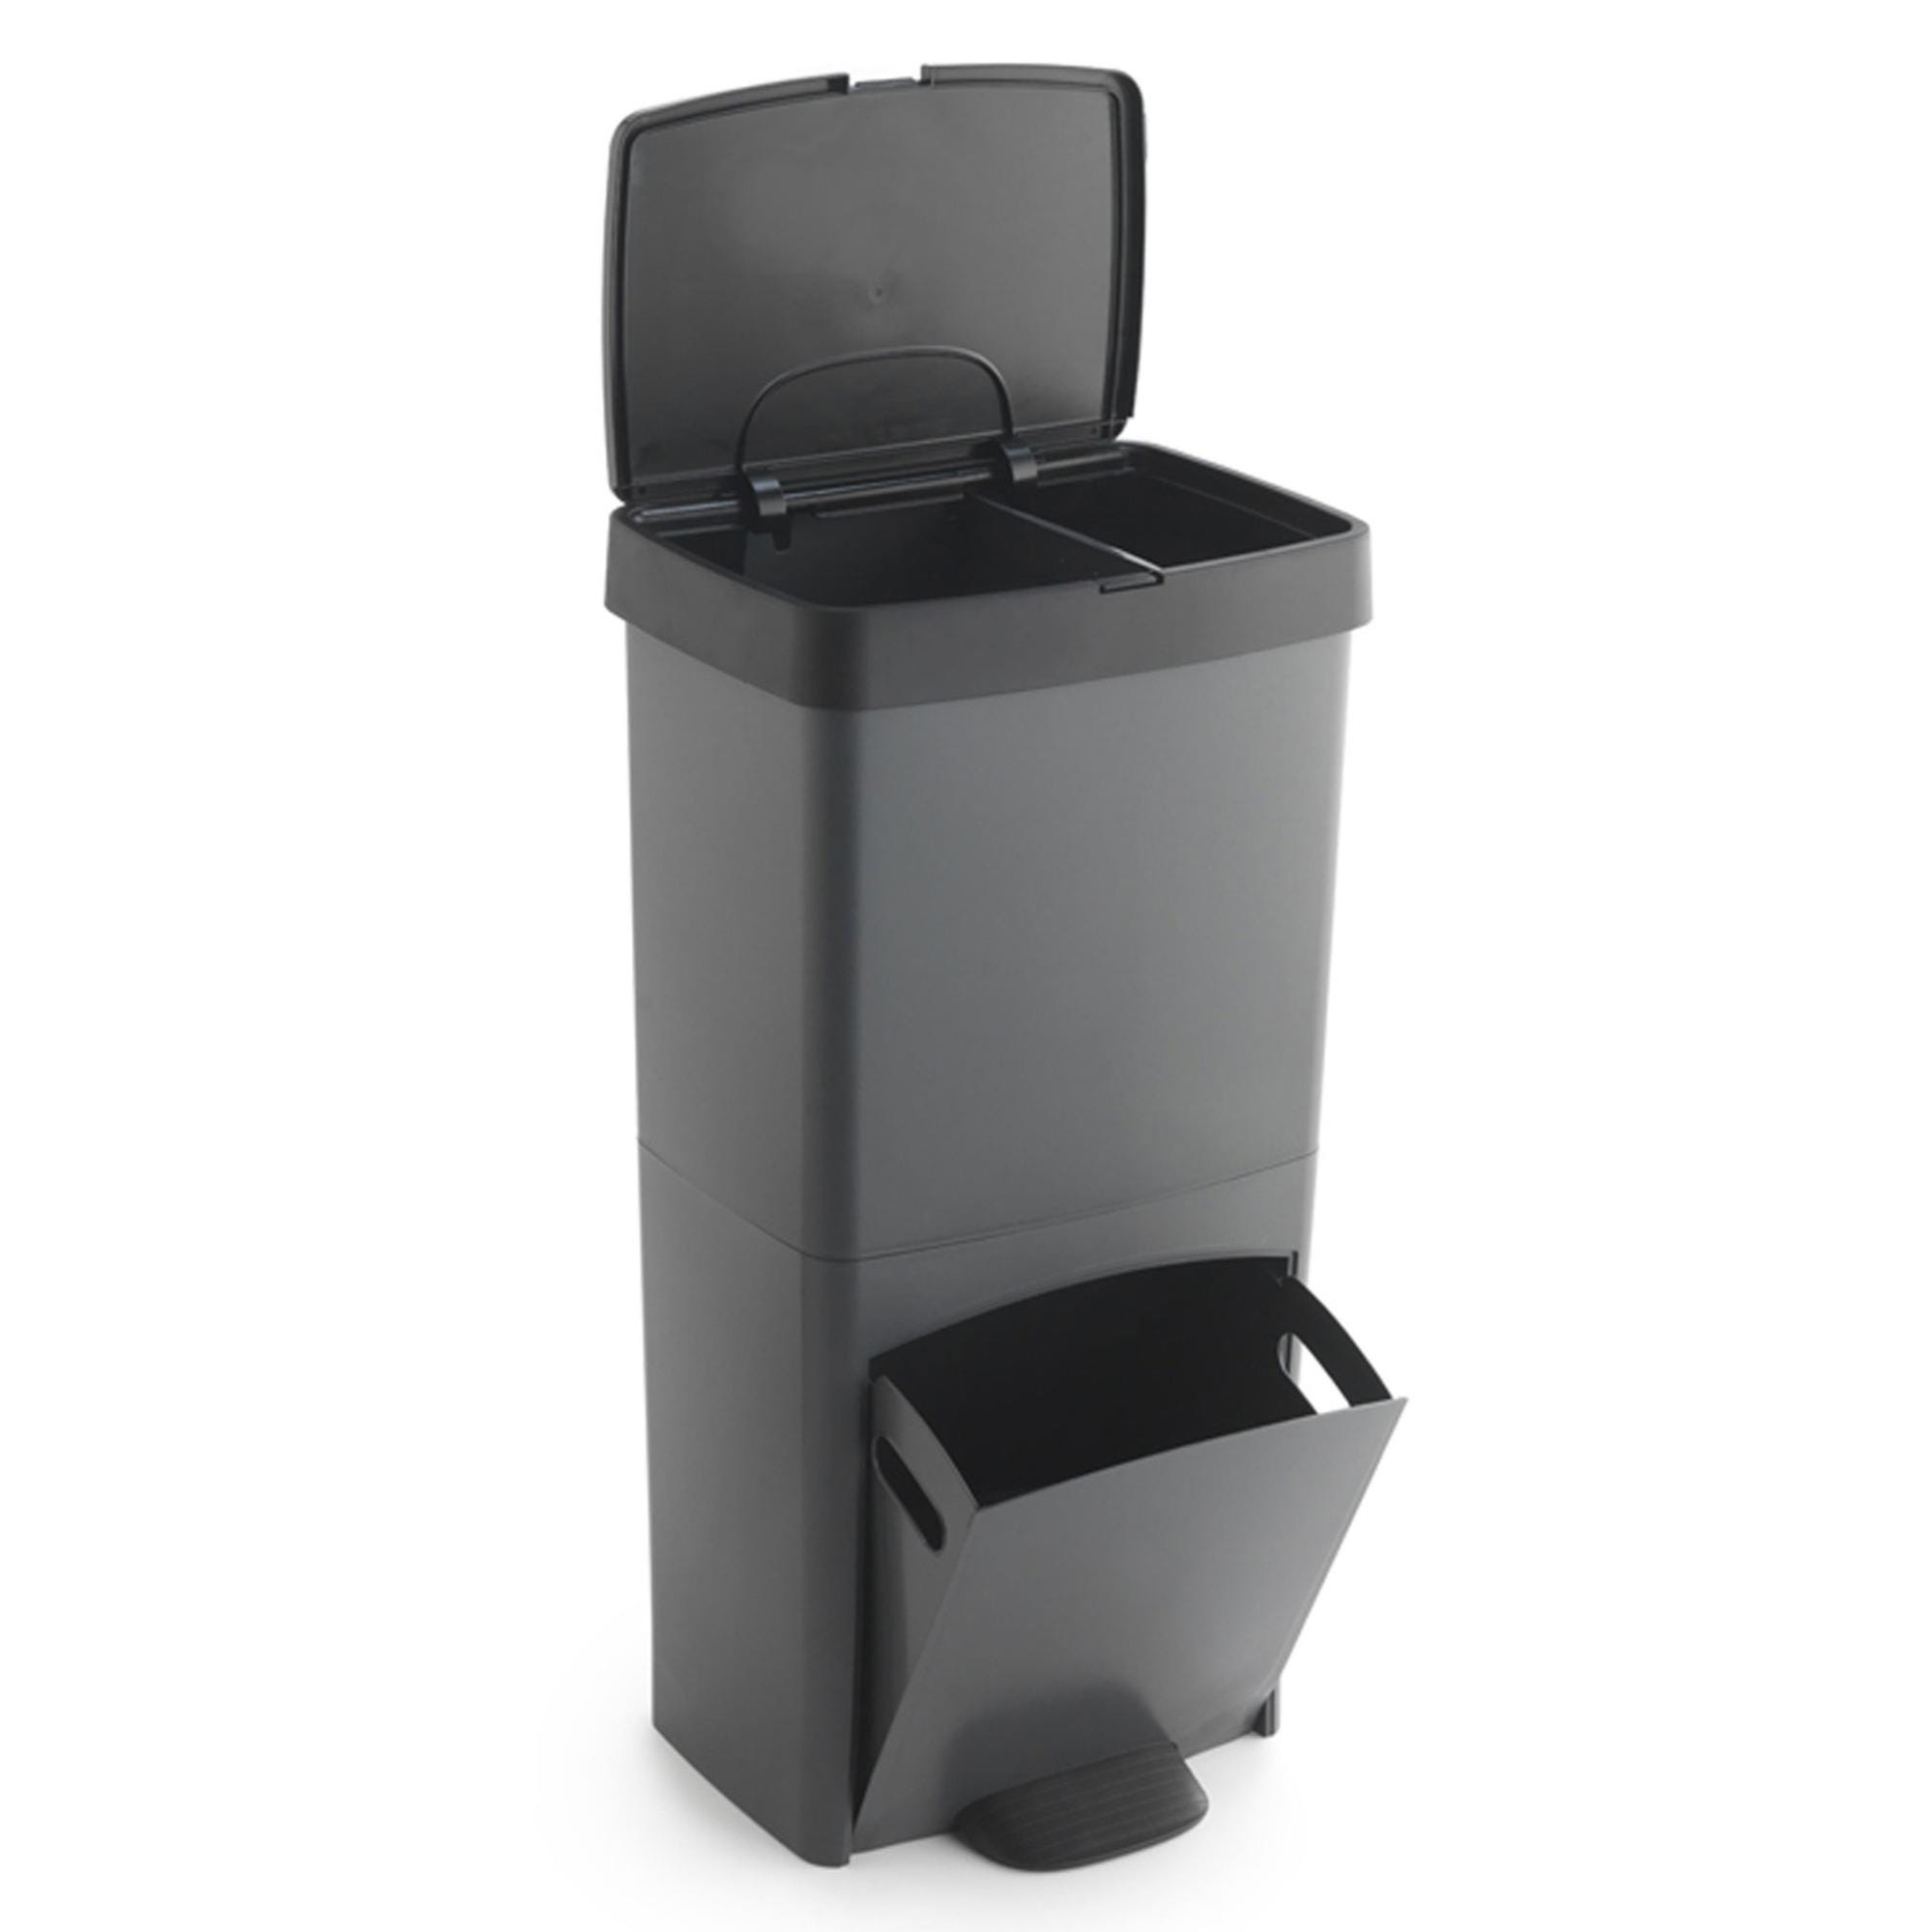 Basics - Rectangular Cubo de basura para reciclaje con 2